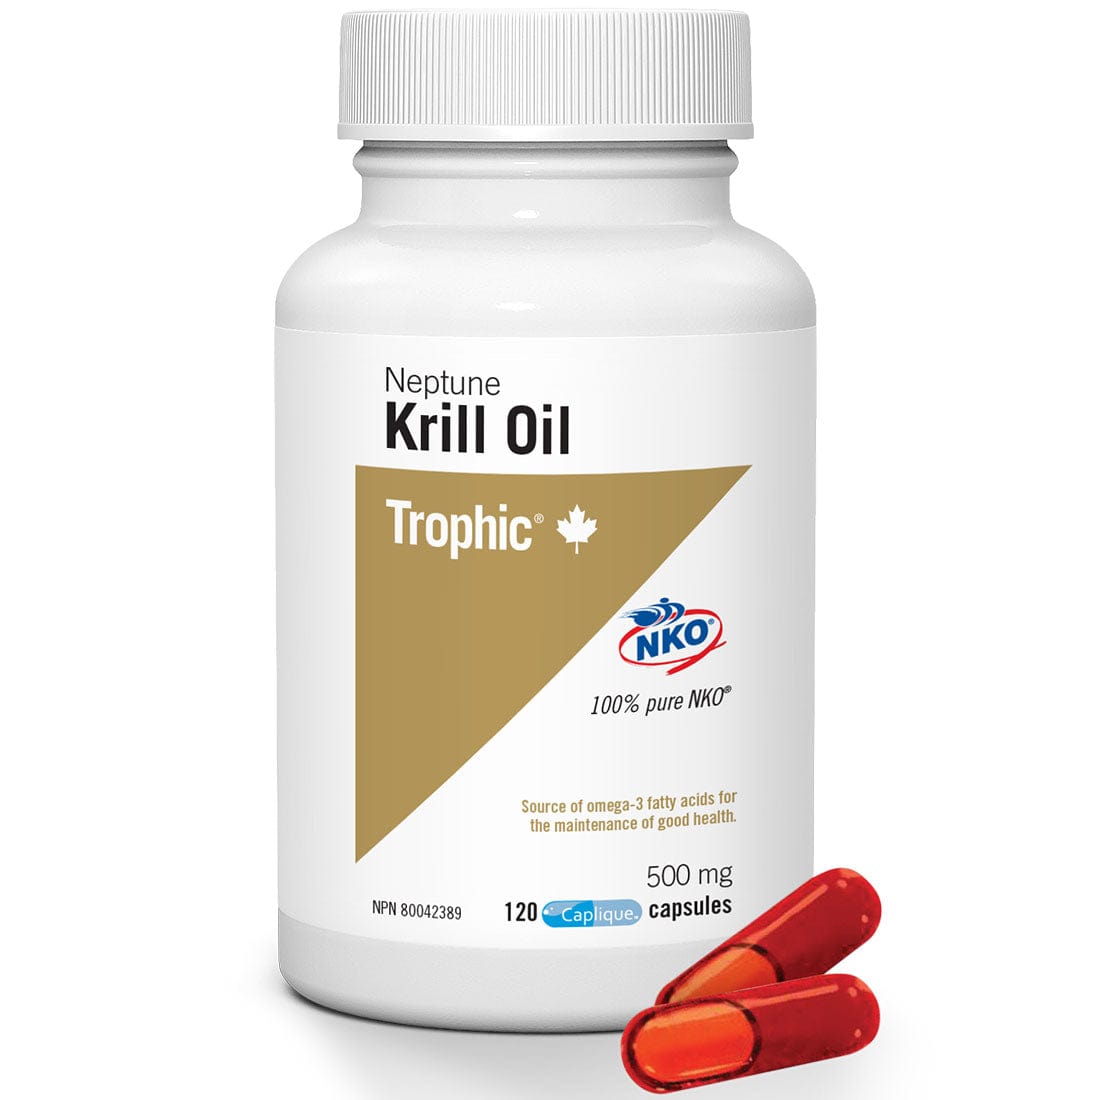 Trophic Neptune Krill Oil 500mg (100% Pure NKO)